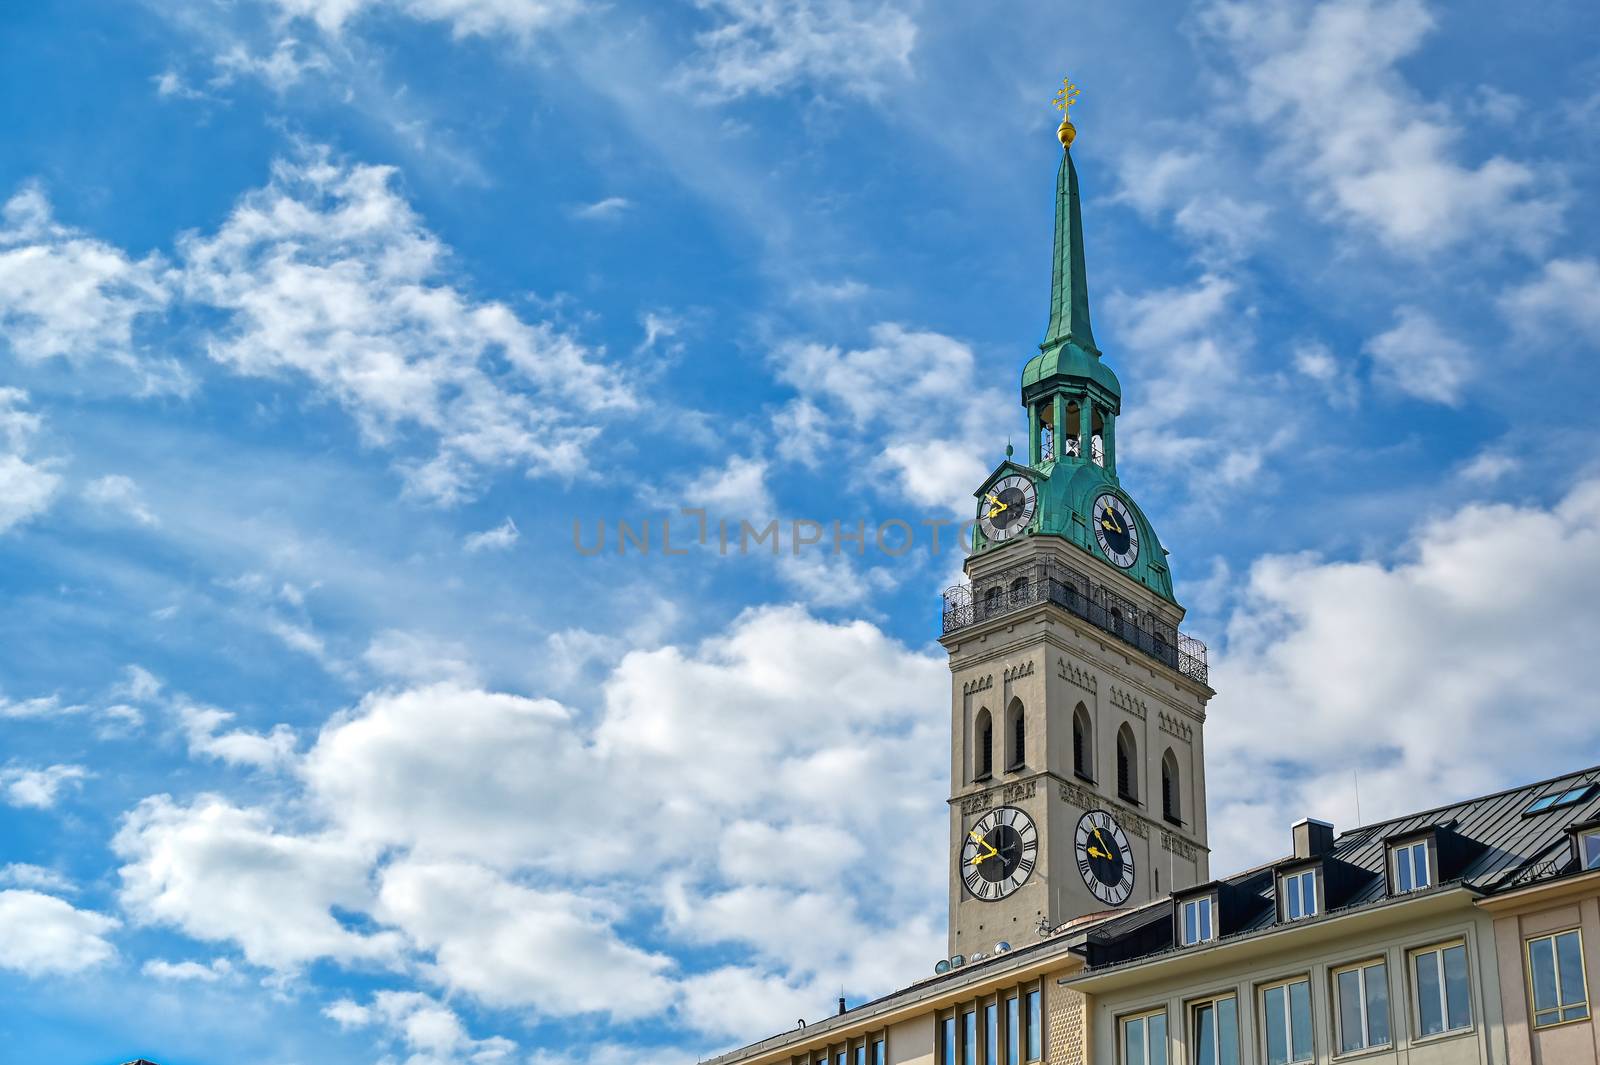 St. Peter's Church in Munich, Germany by jbyard22